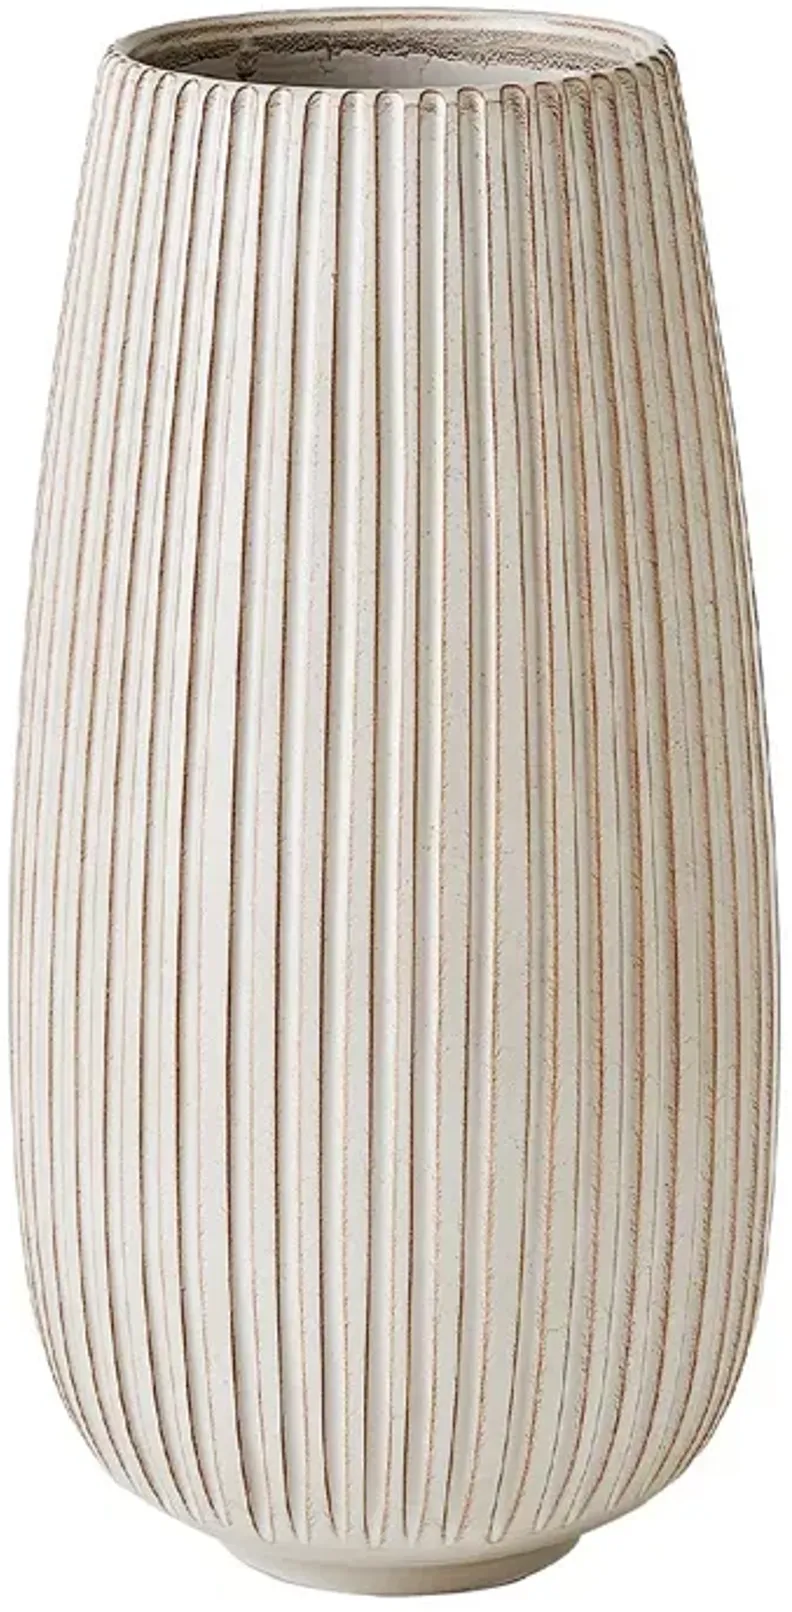 Global Views Vertical Ribbed Vase, Large